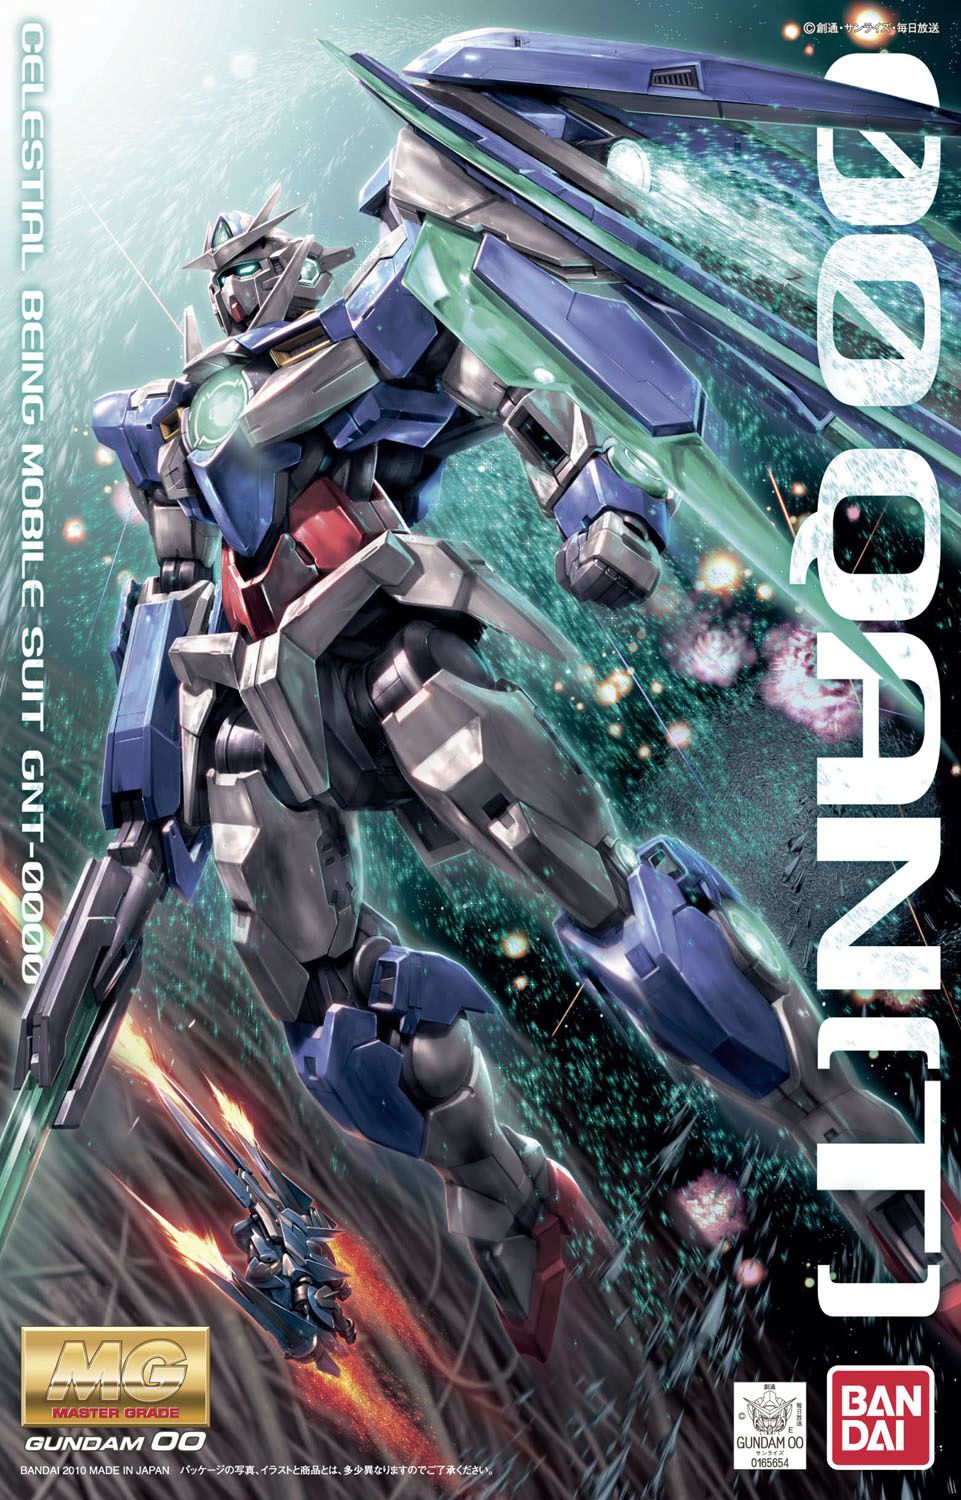 Bandai 1/100 Scale MG Gundam 00 Qan[T] Model Kit